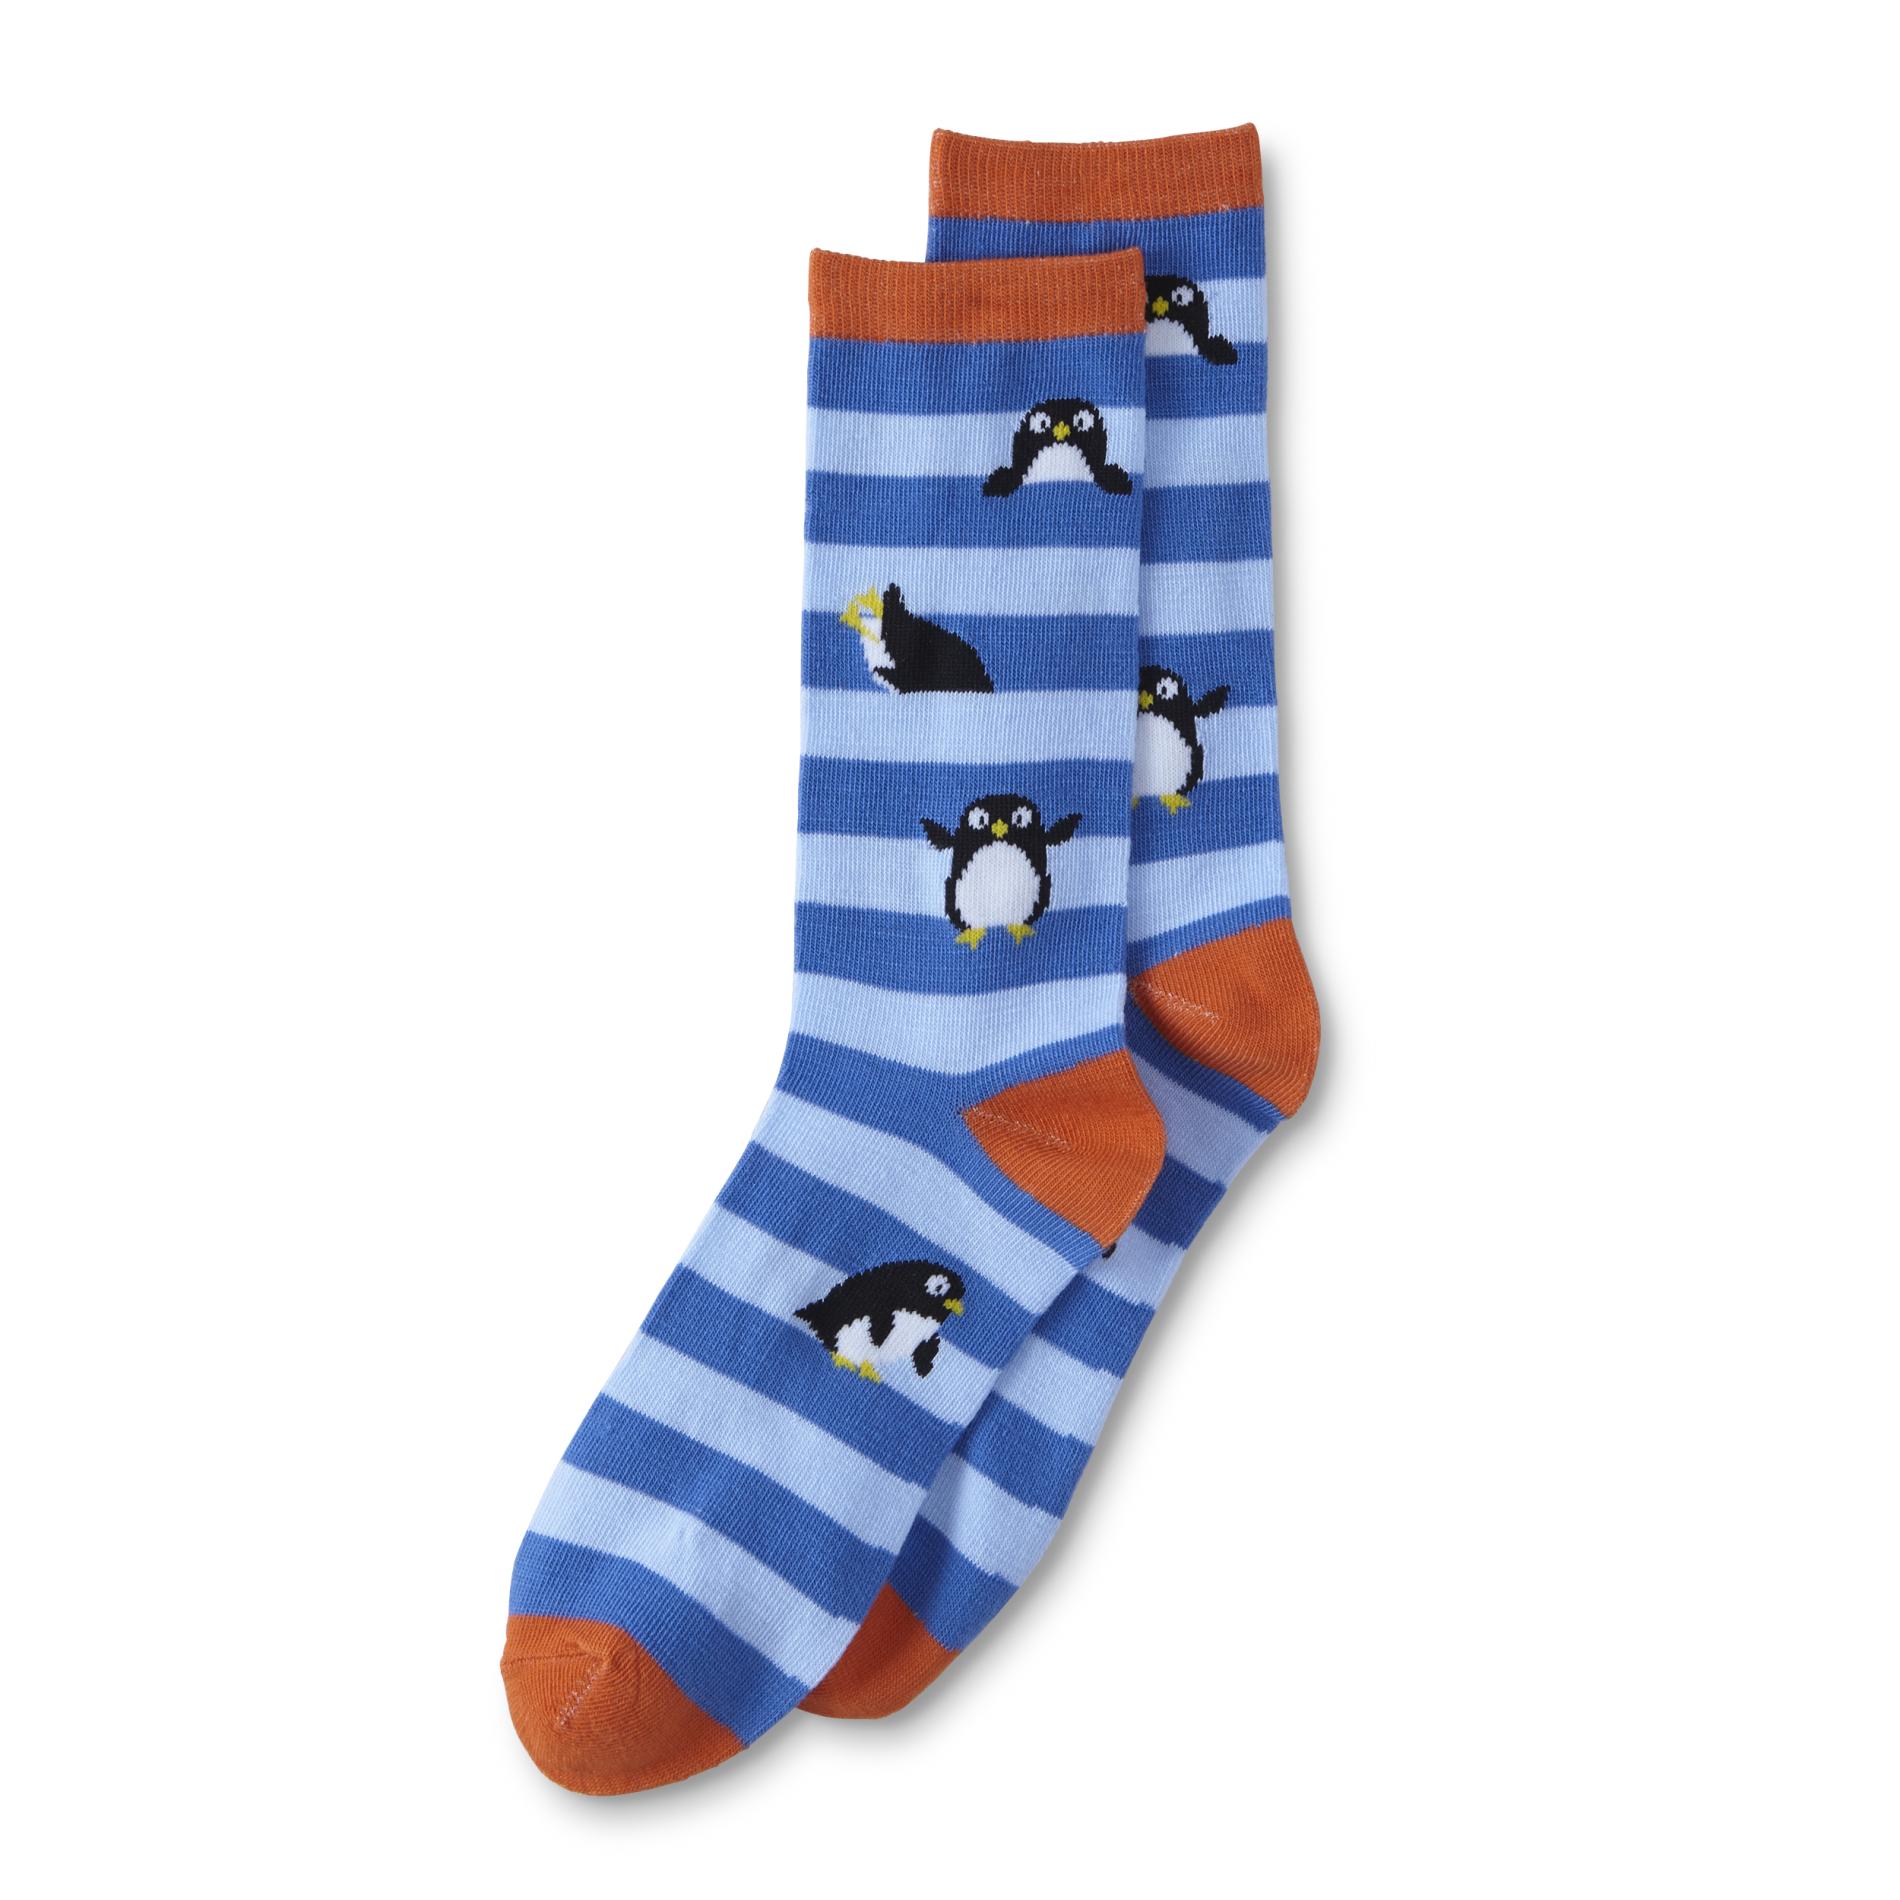 Joe Boxer Junior's Novelty Socks - Striped & Penguins